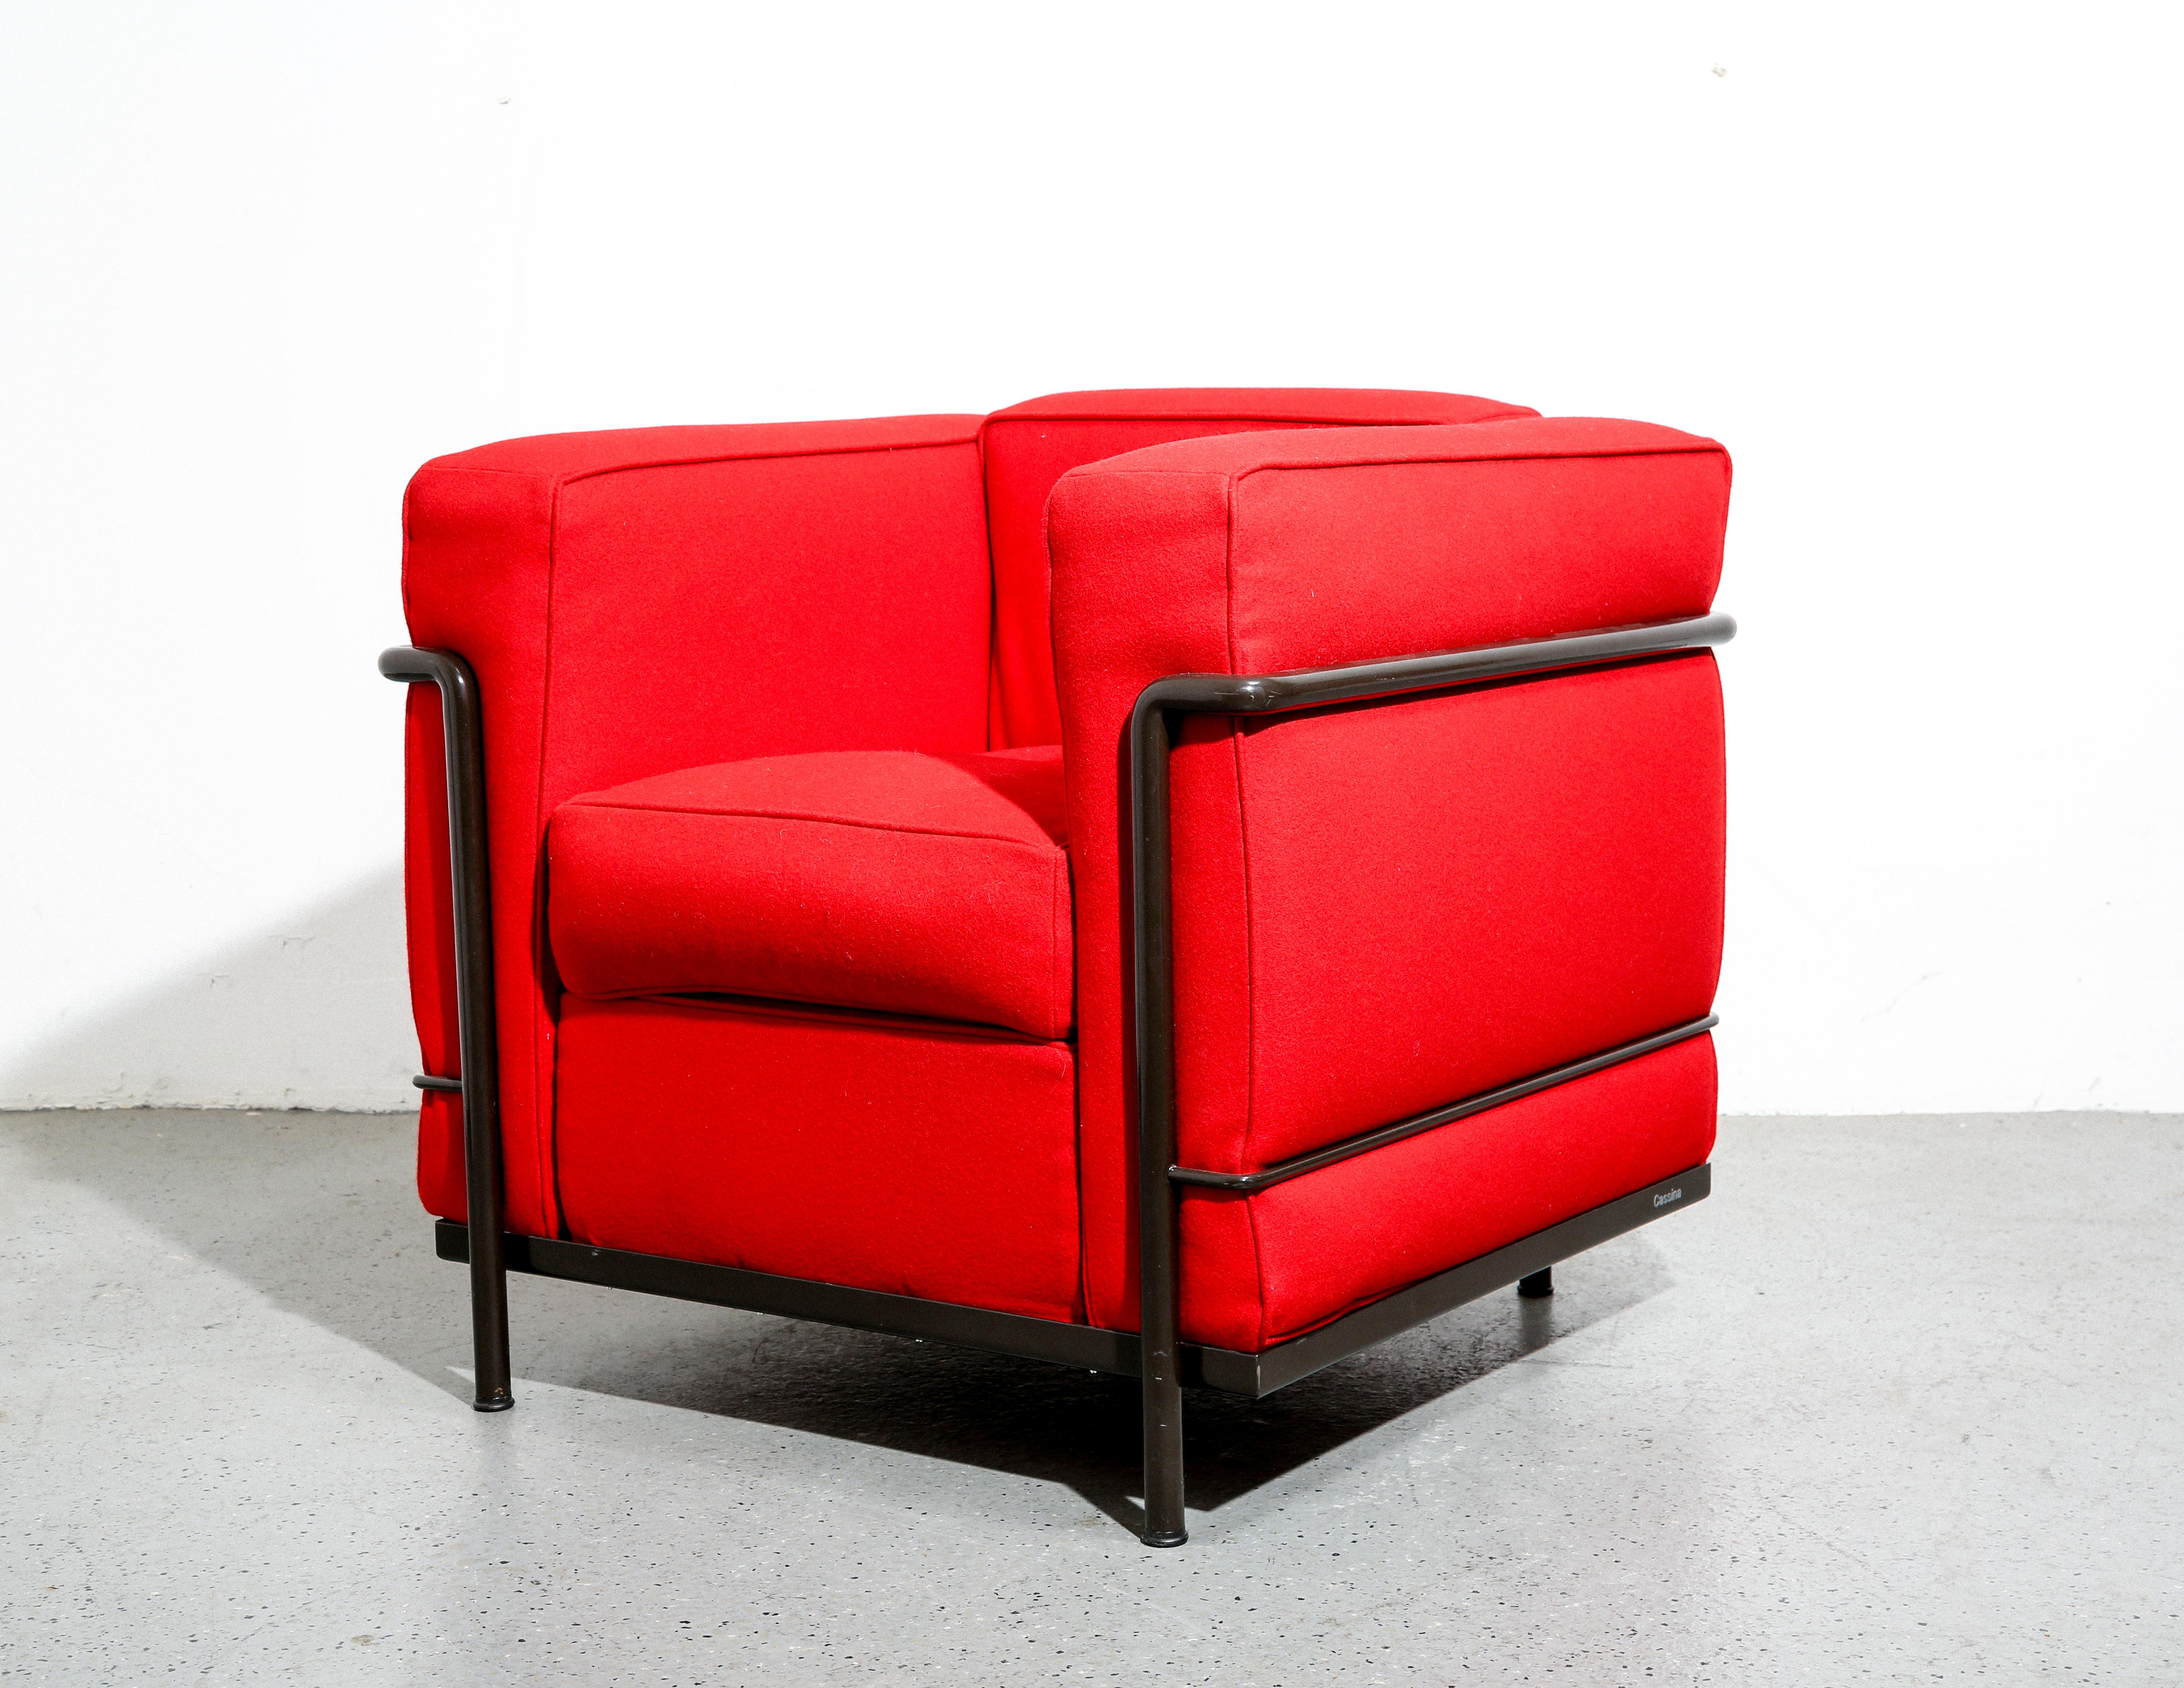 La chaise Le Corbusier LC2, produite par Cassina, est un meuble emblématique qui illustre les principes de conception moderniste de son célèbre architecte-designer, Le Corbusier. Conçue à l'origine dans les années 1920 dans le cadre de la